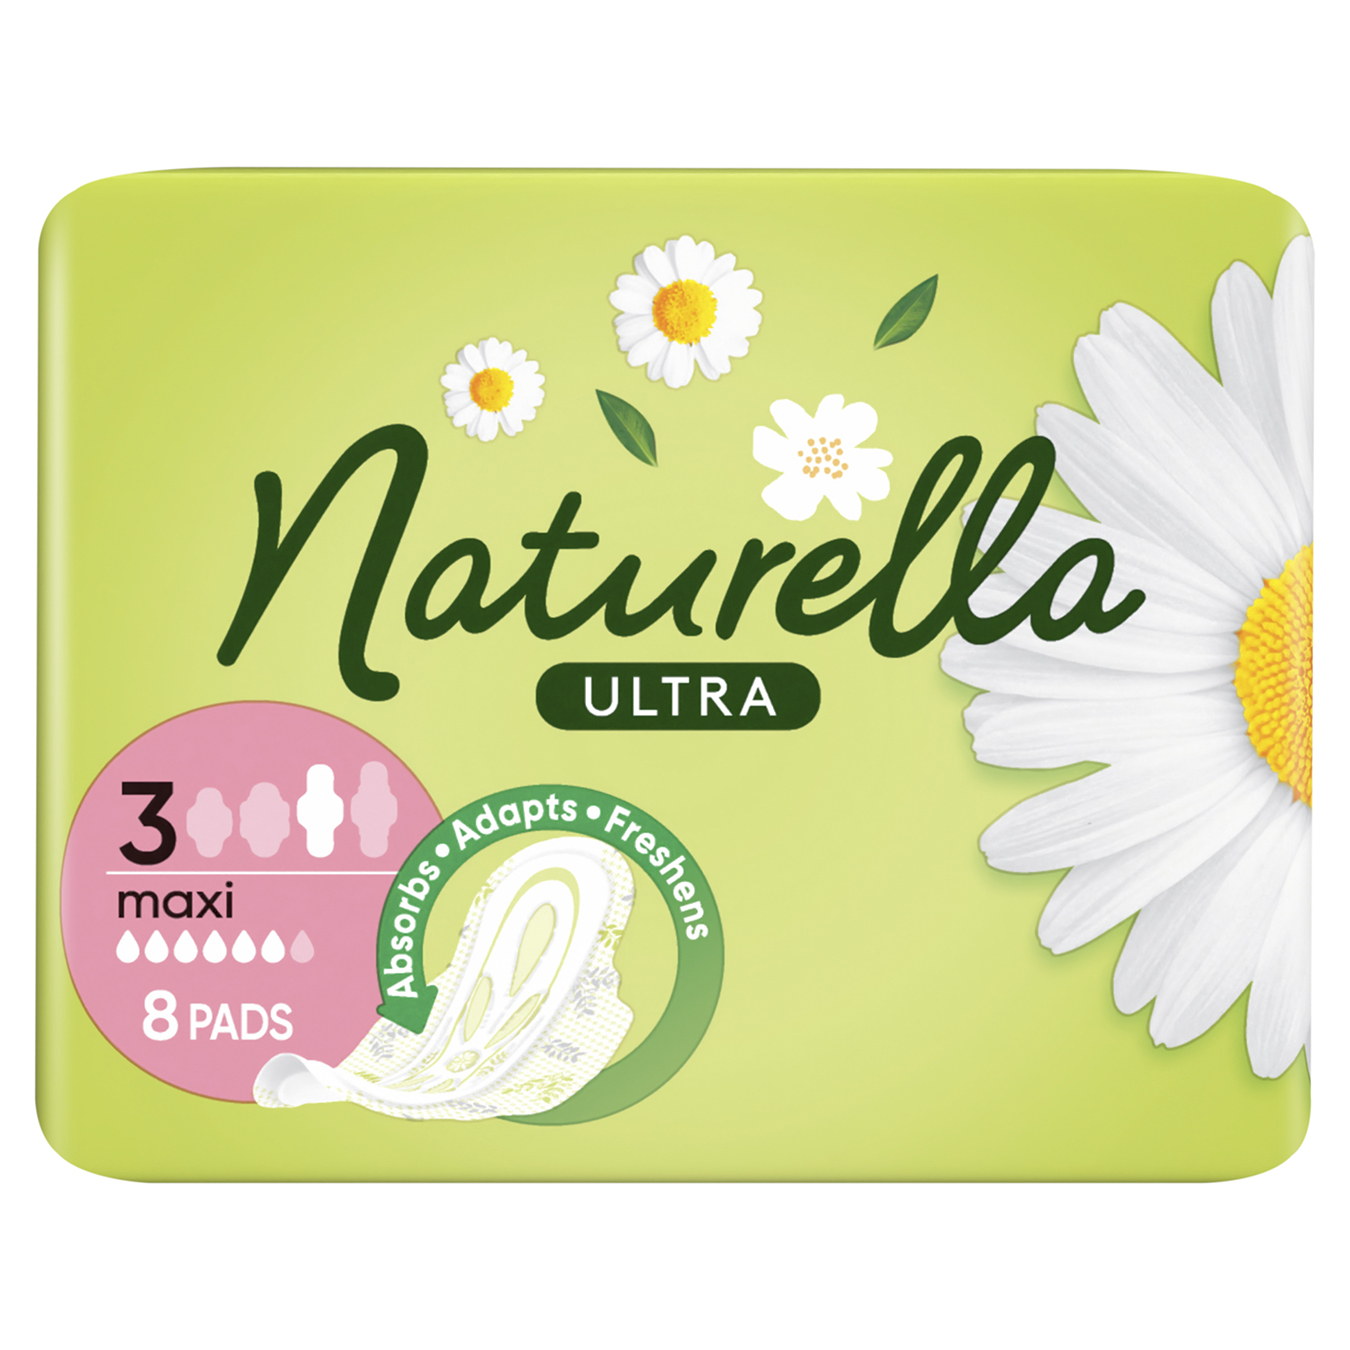 Naturella Ultra Maxi Hygienical Pads 8pcs